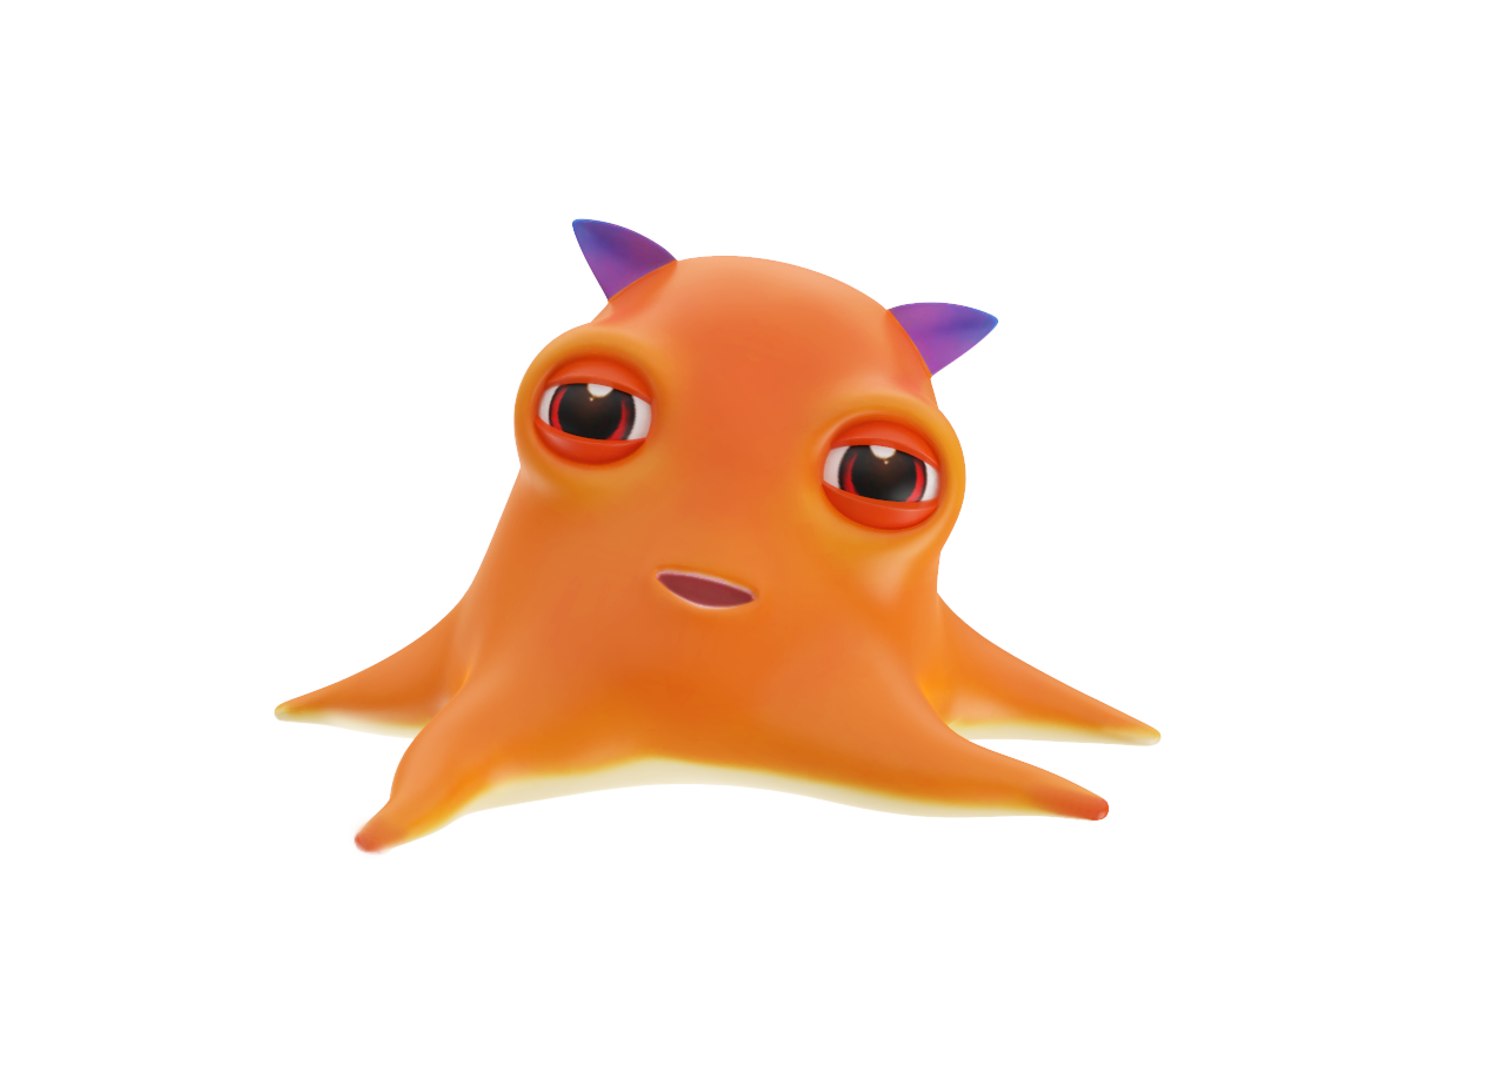 3D dumbo octopus toon fish https://p.turbosquid.com/ts-thumb/5e/YpvgLa/yraLb7Th/r20/png/1597694756/1920x1080/fit_q87/62fc623b26544e6061111f17e85fb8c919f5fd7c/r20.jpg